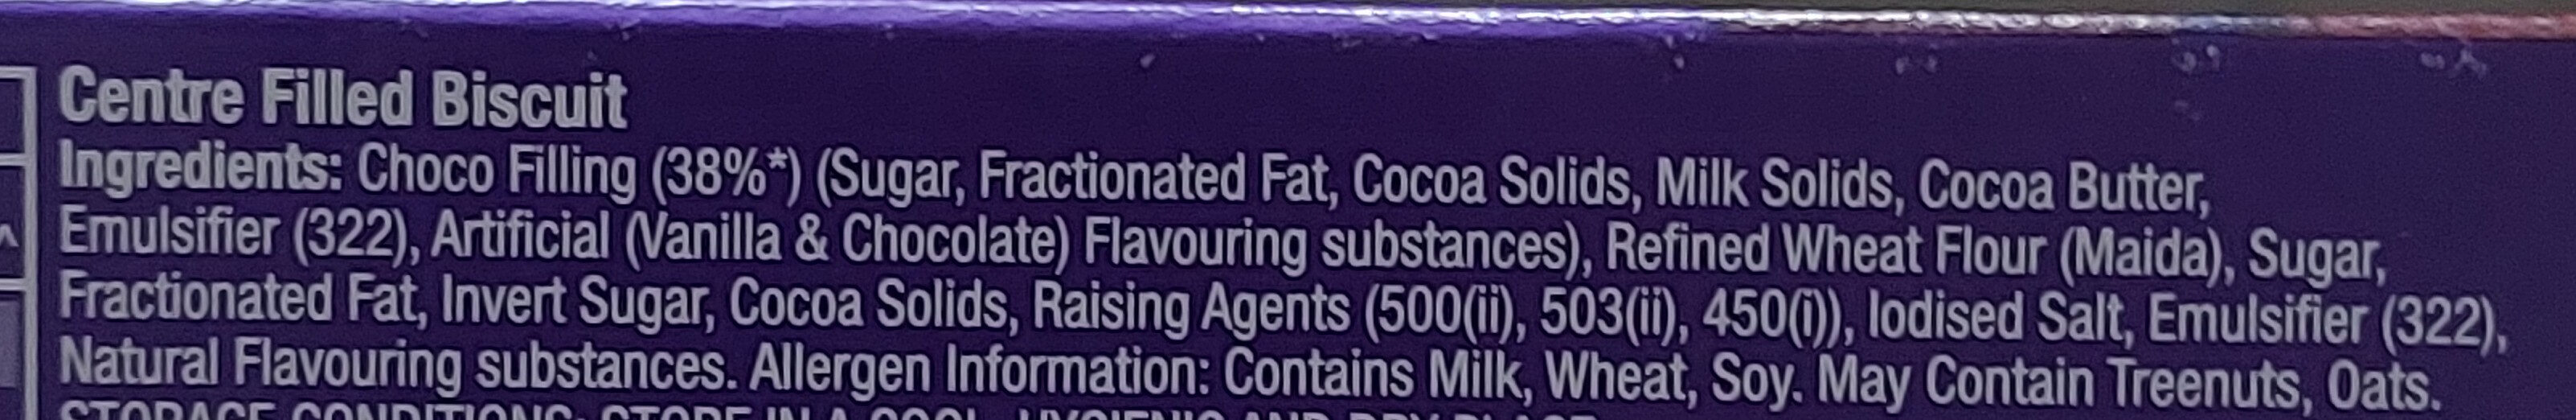 Chocobakes - Ingredients